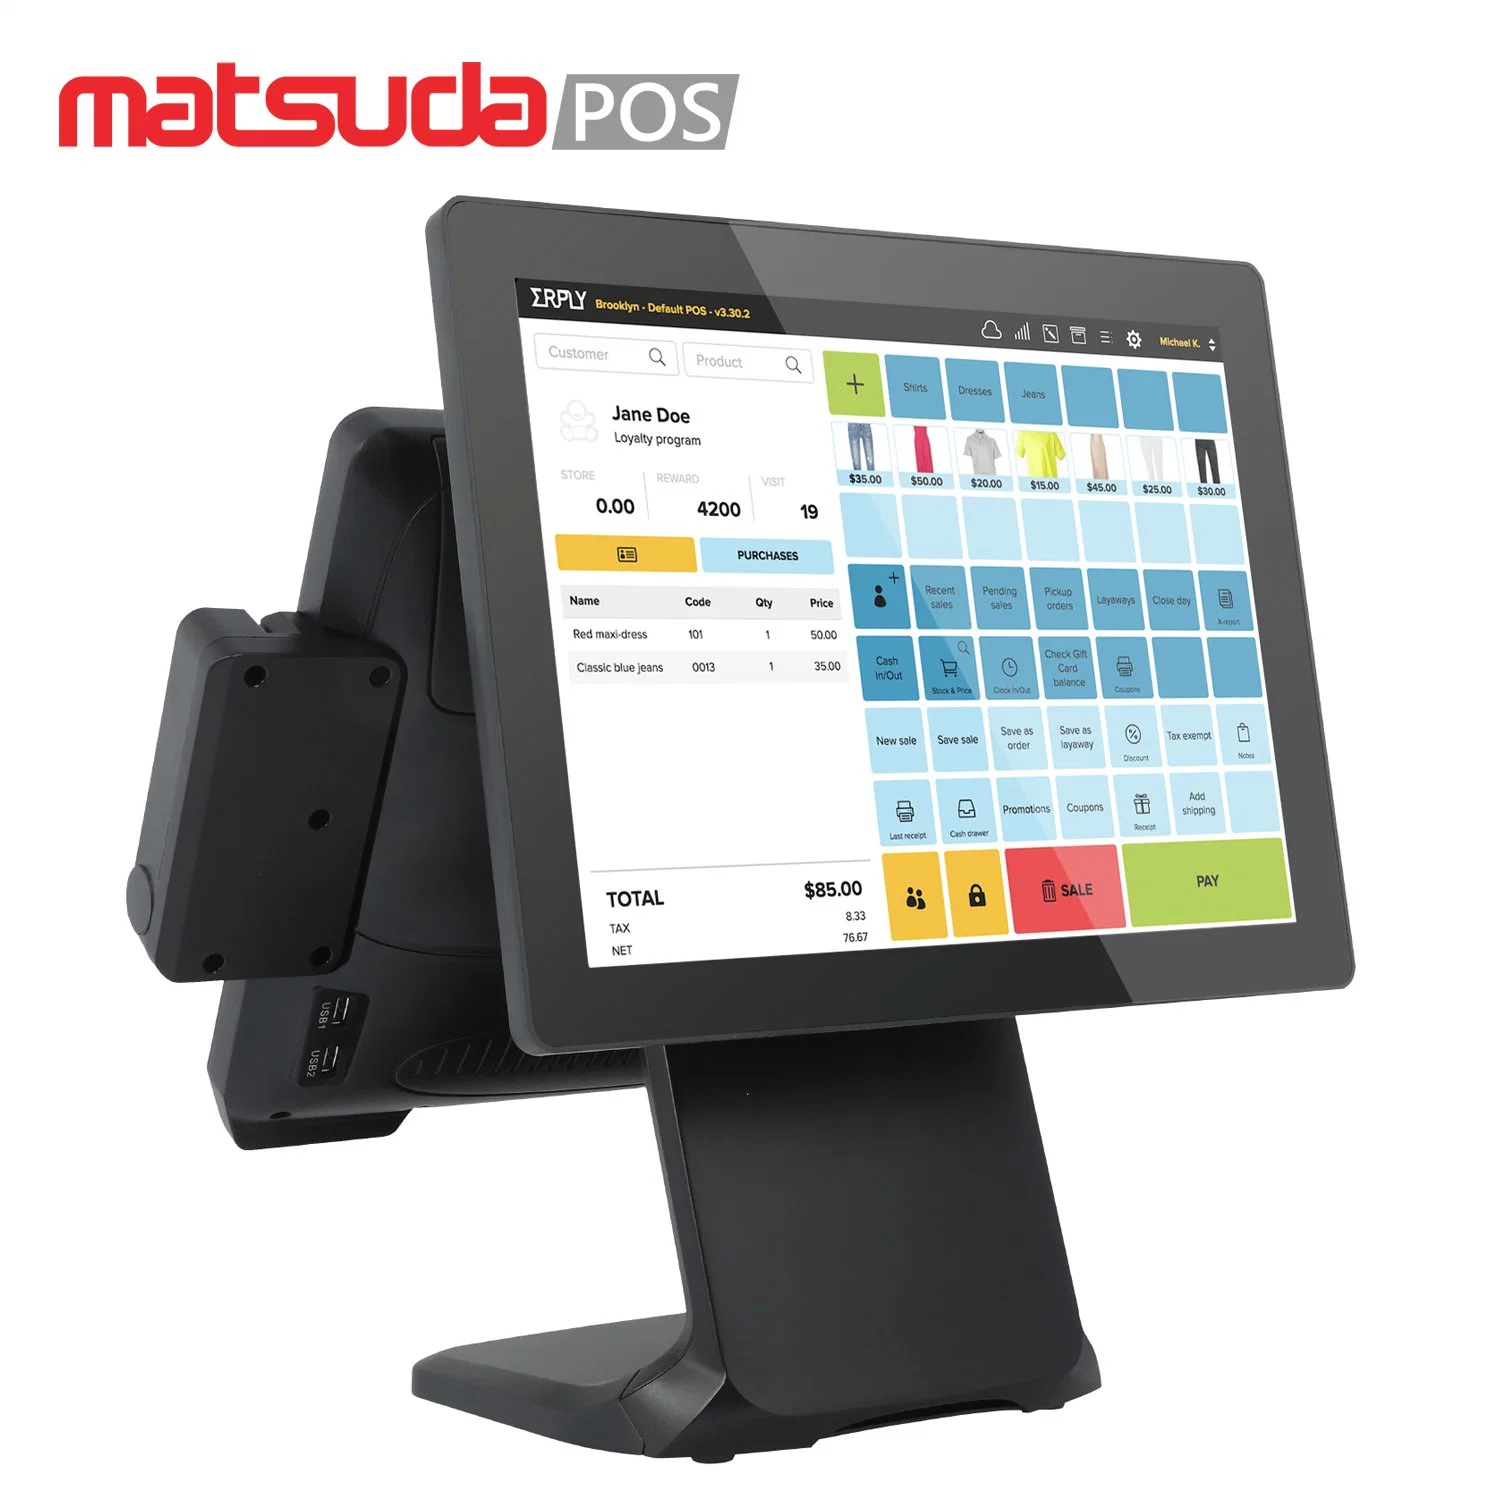 Hersteller liefern heißer Verkauf Matsuda POS St9800 15inch Kapazitive Touch Bildschirm All-in-One POS-System Computer